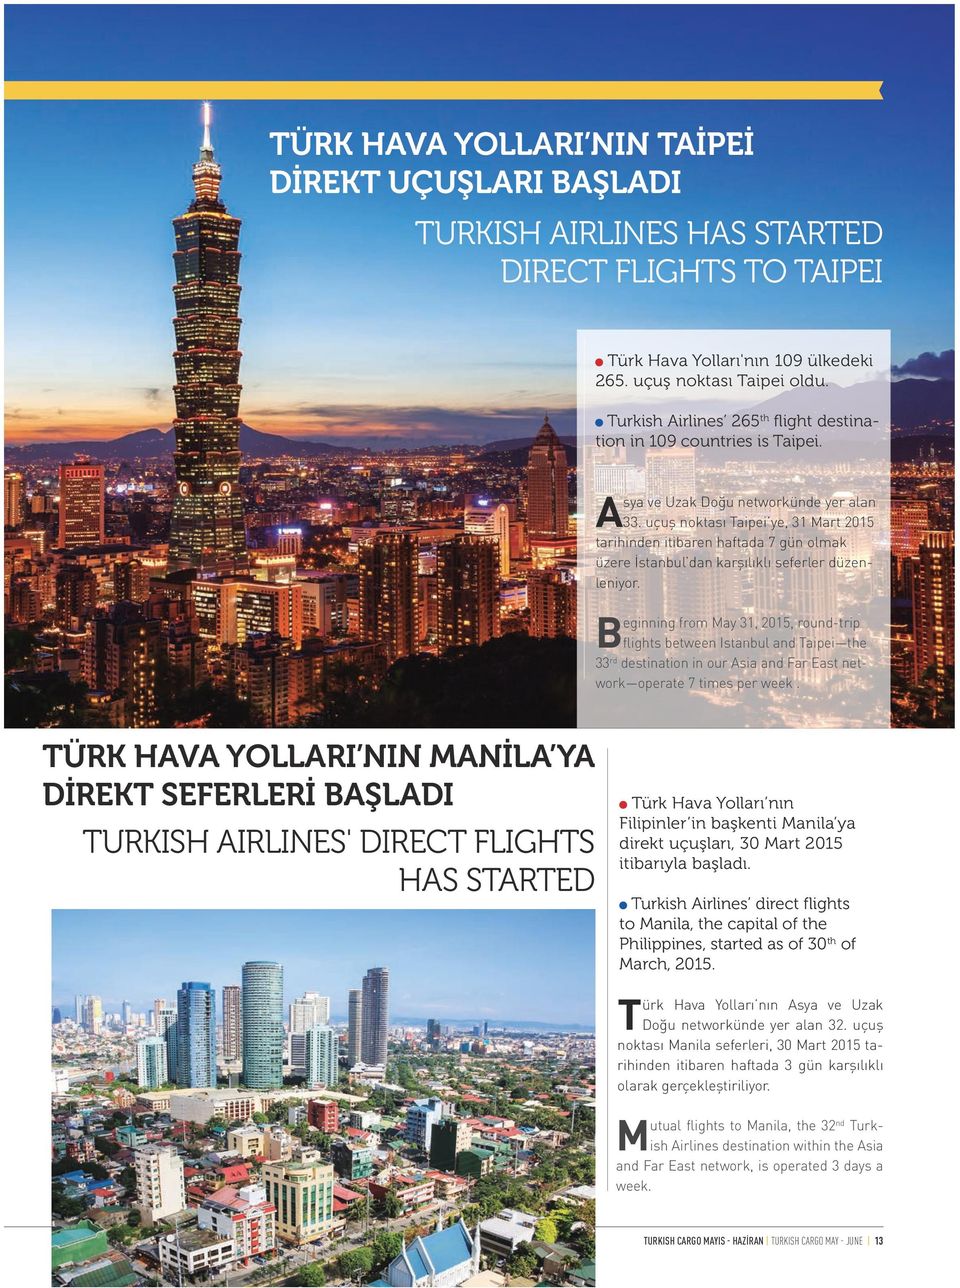 uçuş noktası Taipei ye, 31 Mart 2015 tarihinden itibaren haftada 7 gün olmak üzere İstanbul dan karşılıklı seferler düzenleniyor.